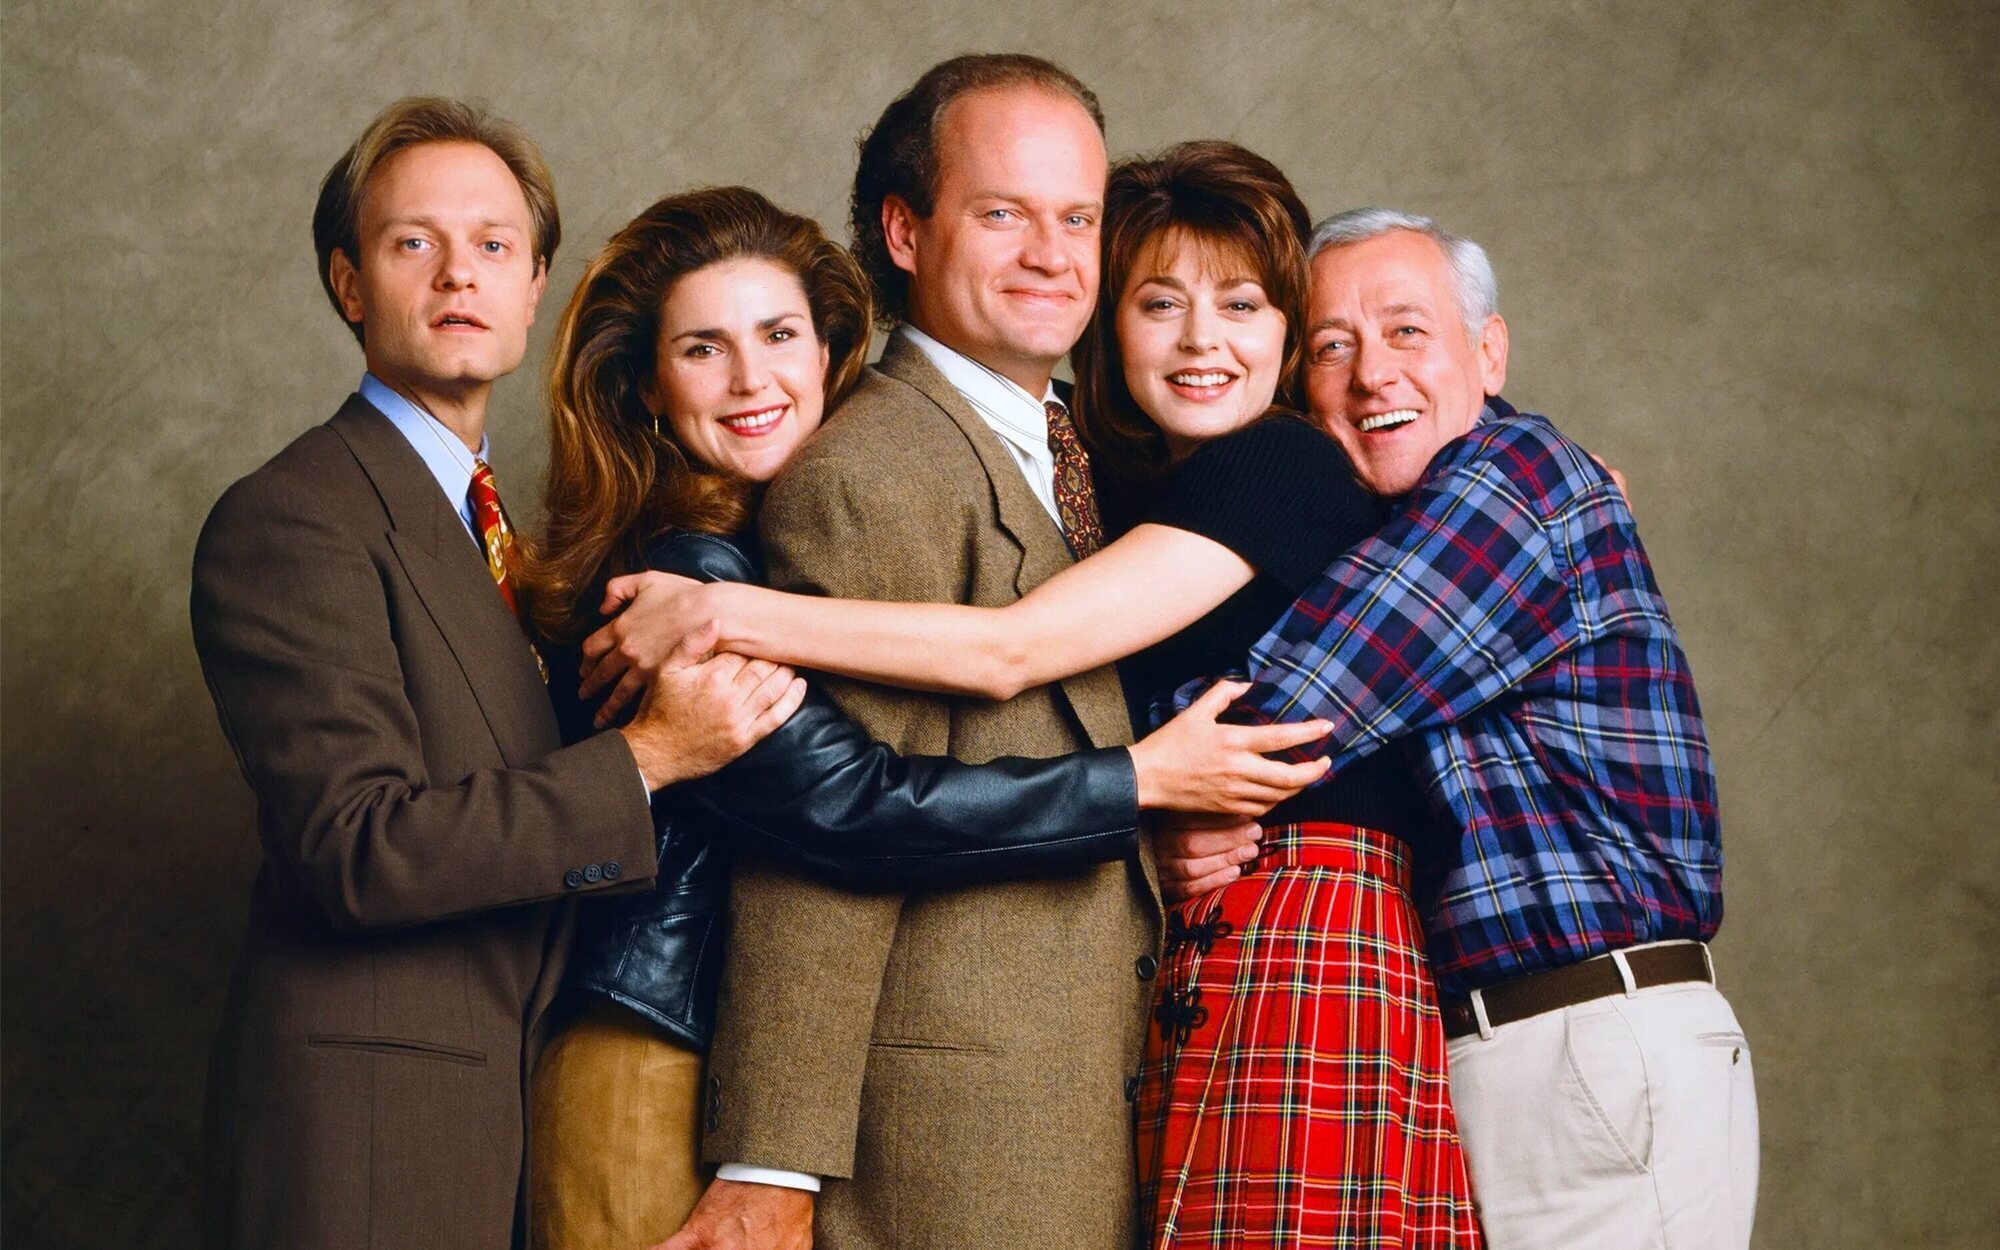 ¿En qué punto está cada personaje del 'Frasier' original en el regreso de la serie casi 20 años después?